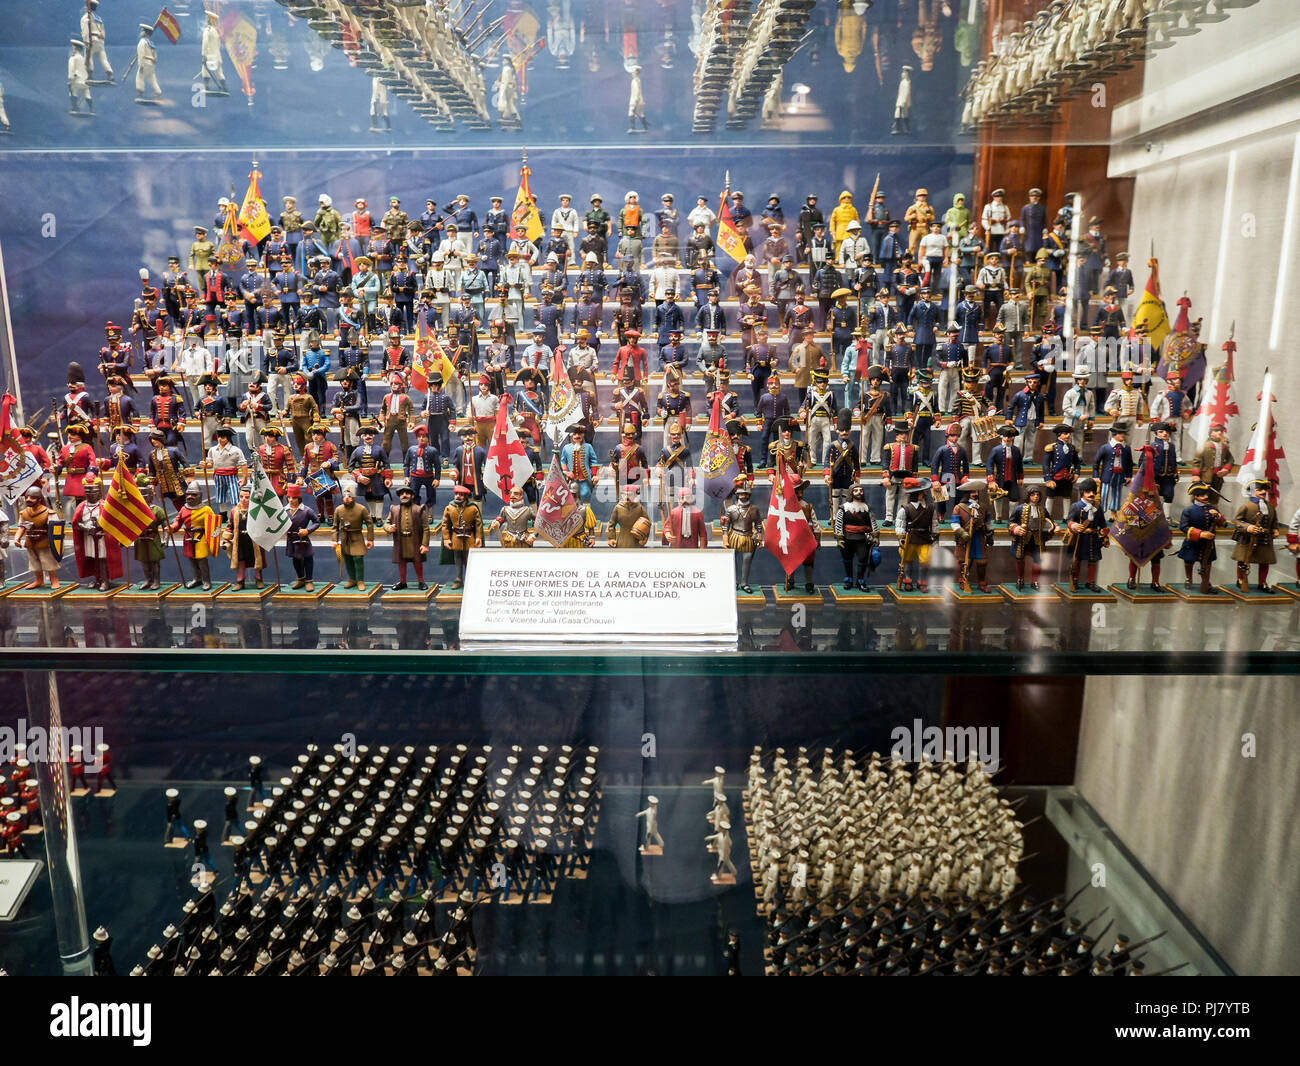 Soldados de plomo con los uniformes de la Armada Española desde el siglo XIII hasta la actualidad. Museo del mar. Madrid. España Stock Photo